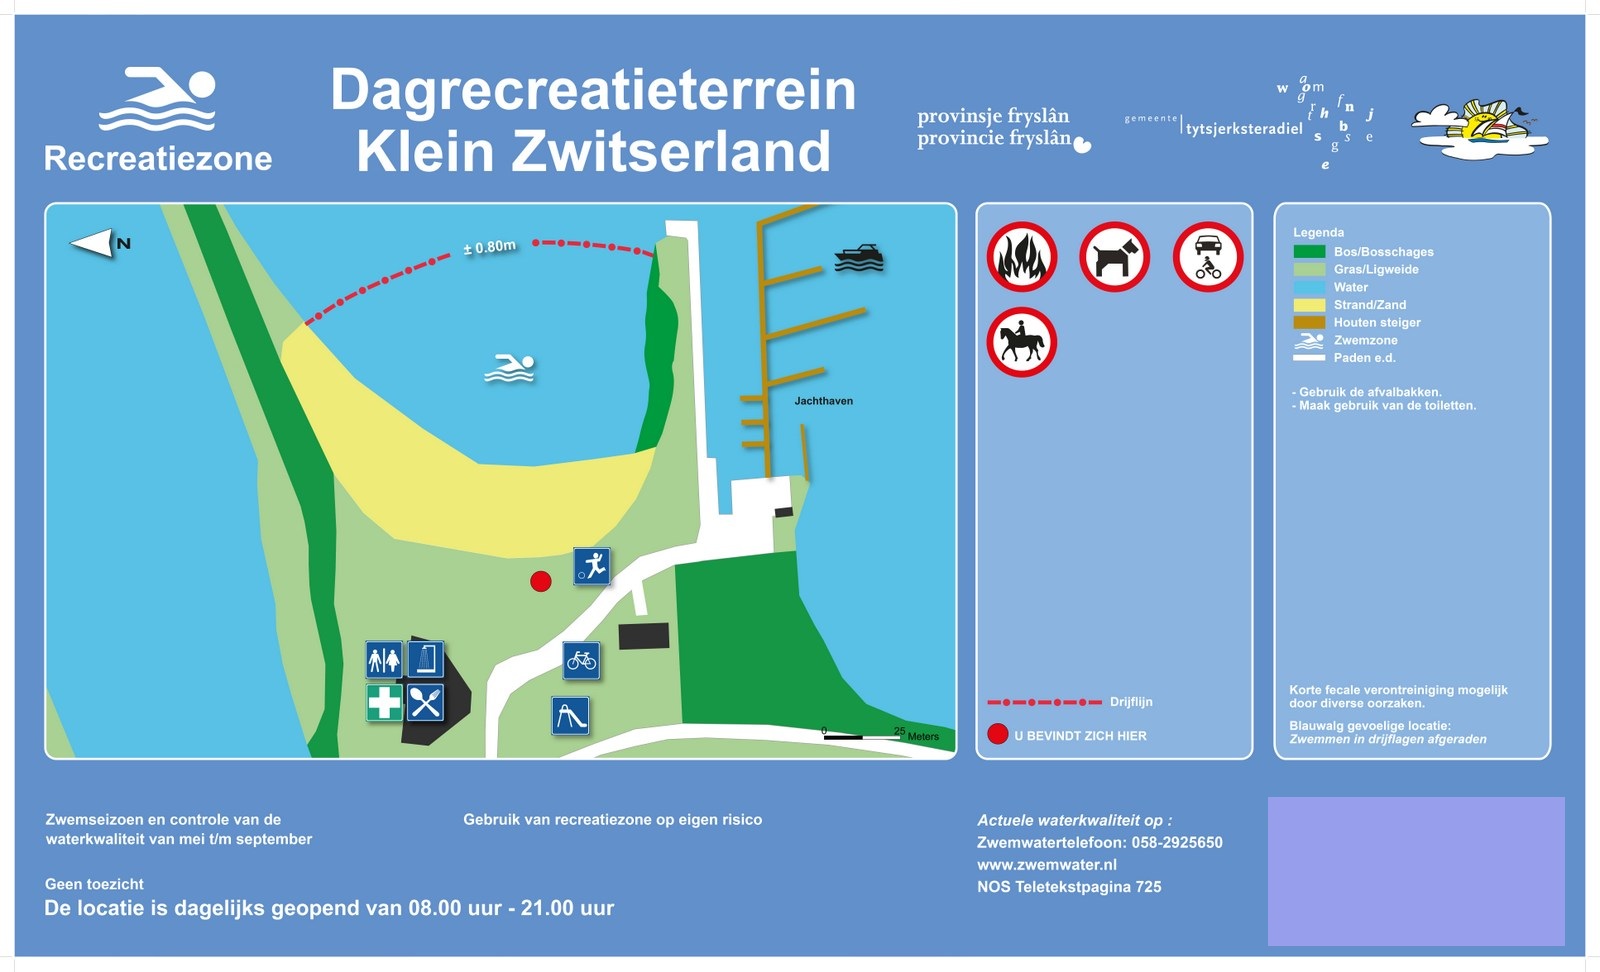 Het informatiebord bij zwemlocatie Dagrecreatieterrein Klein Zwitserland